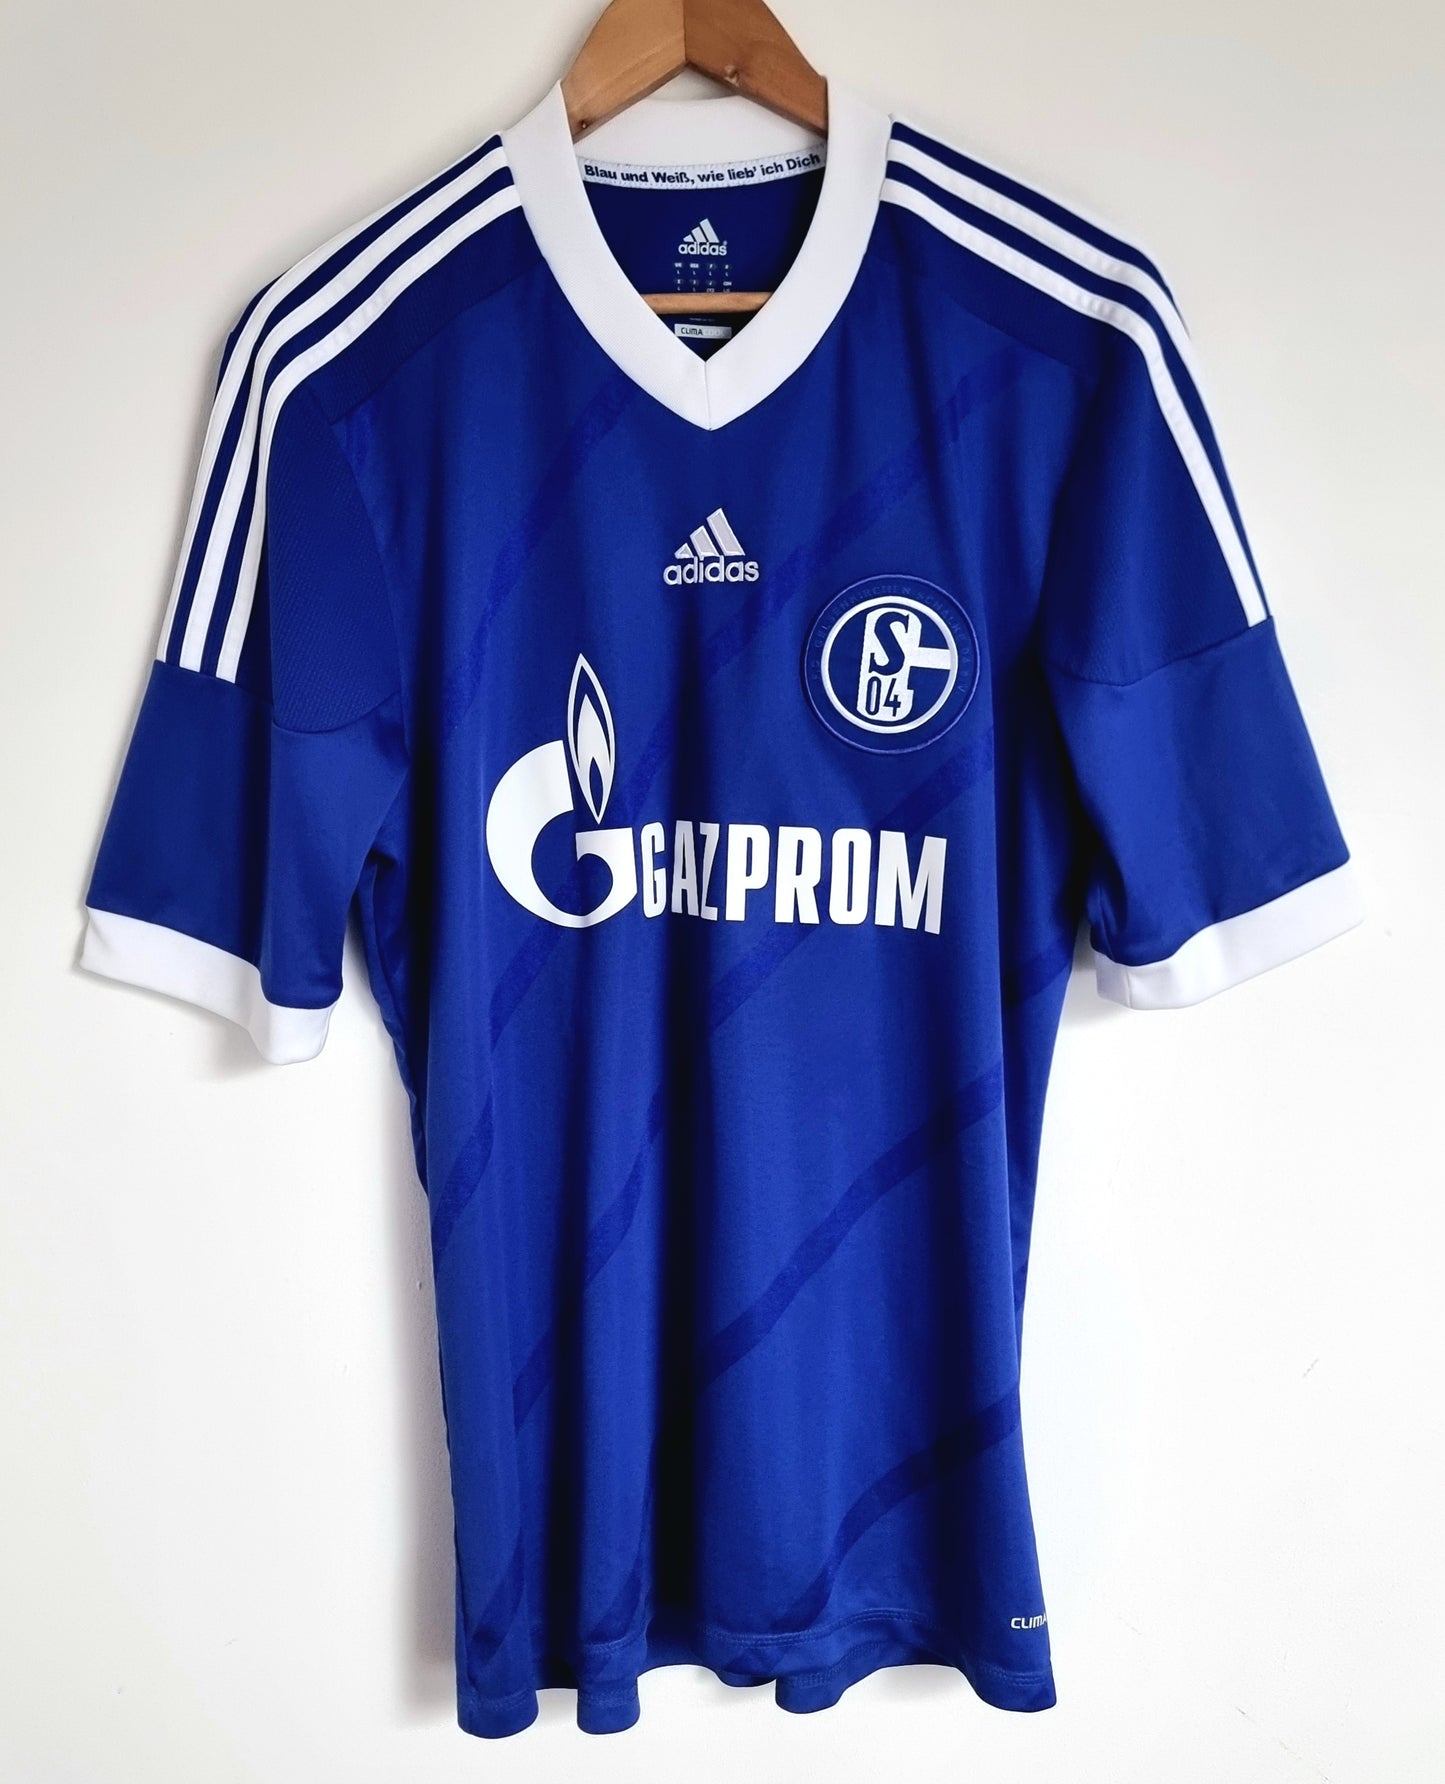 Adidas Schalke 04 12/14 'Meyer 7' Home Shirt Large